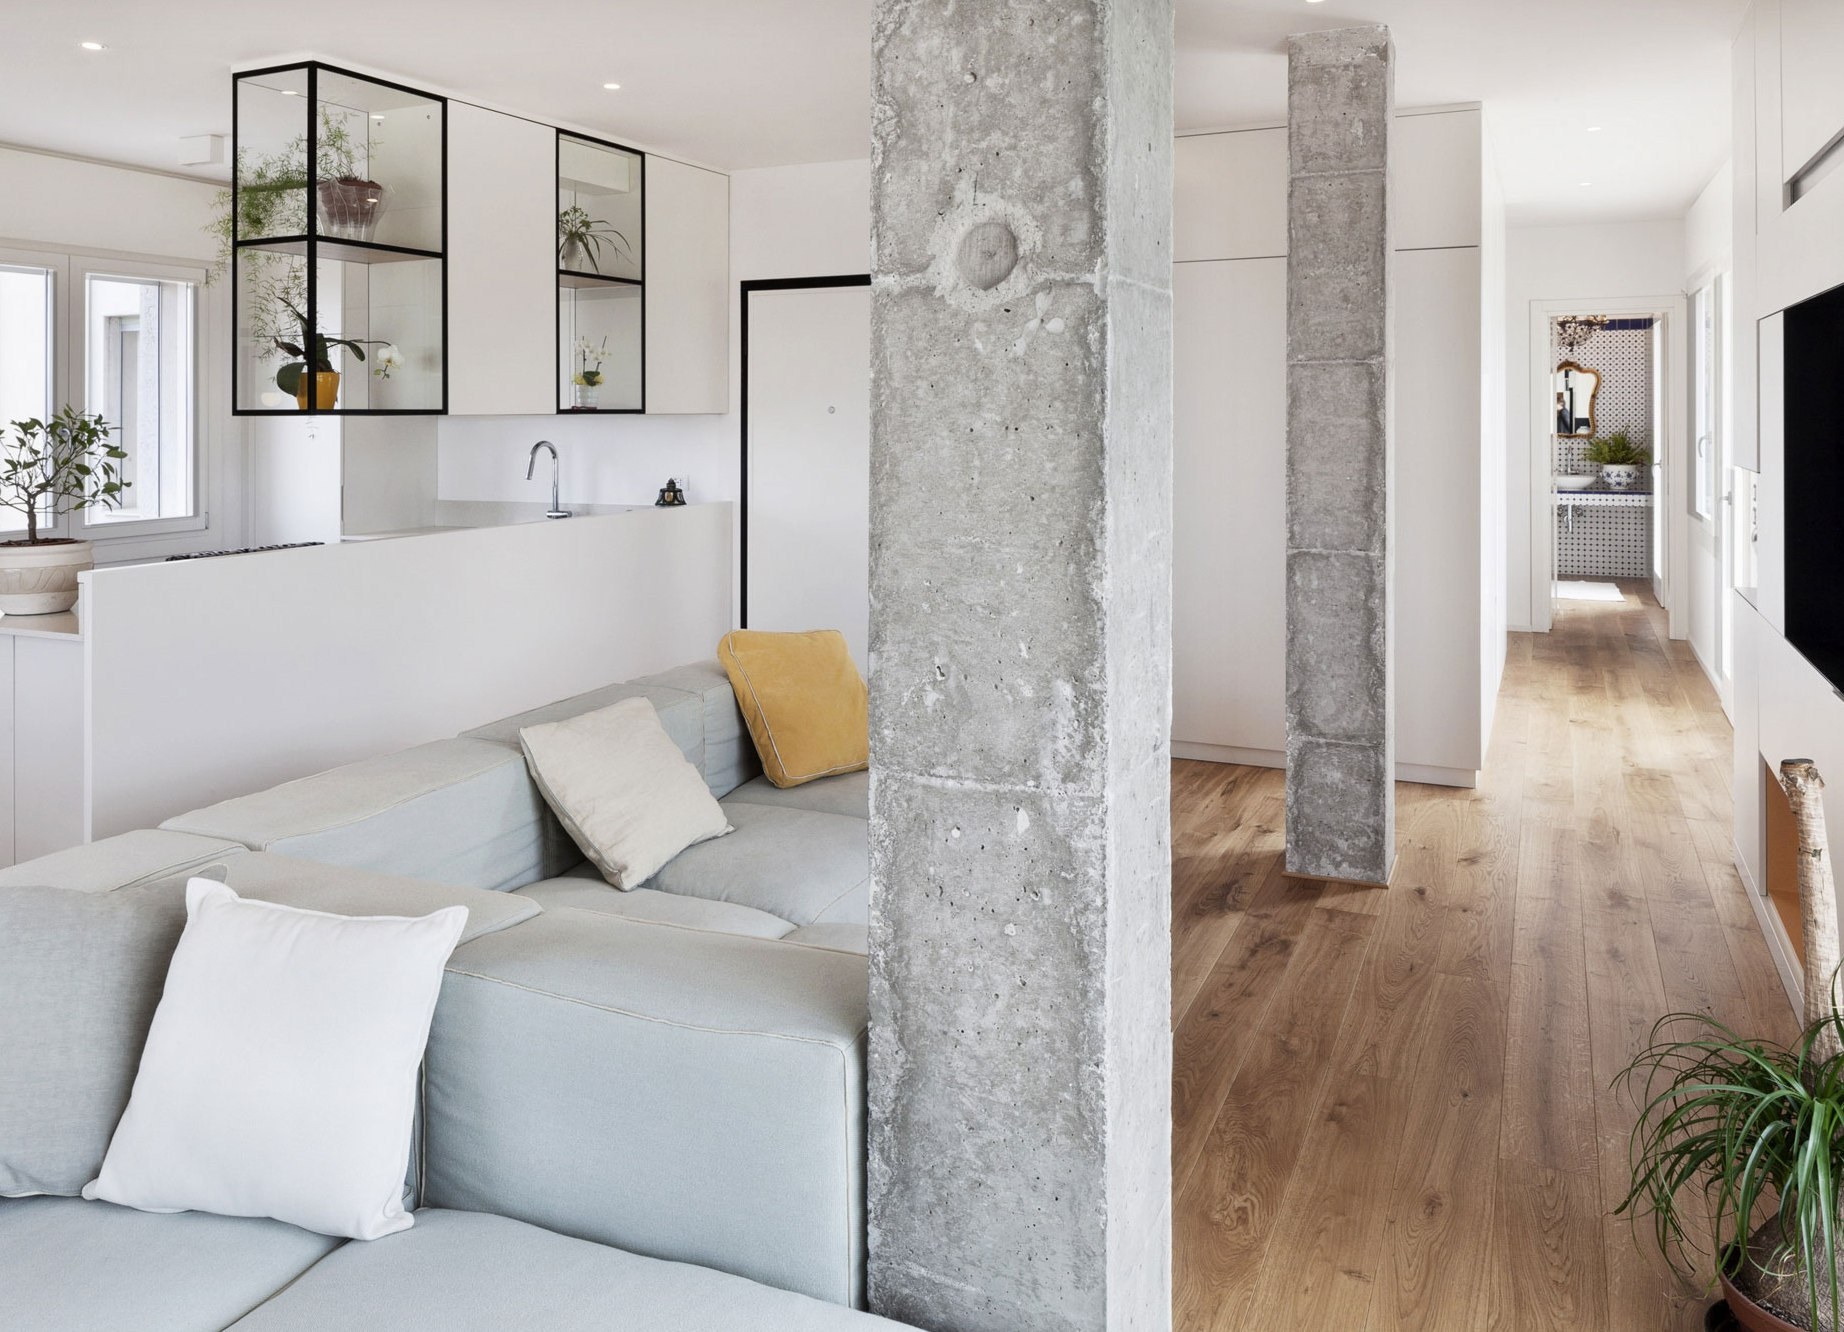 Американские квартиры: самые красивые дизайн-проекты интерьеров в разных стилях